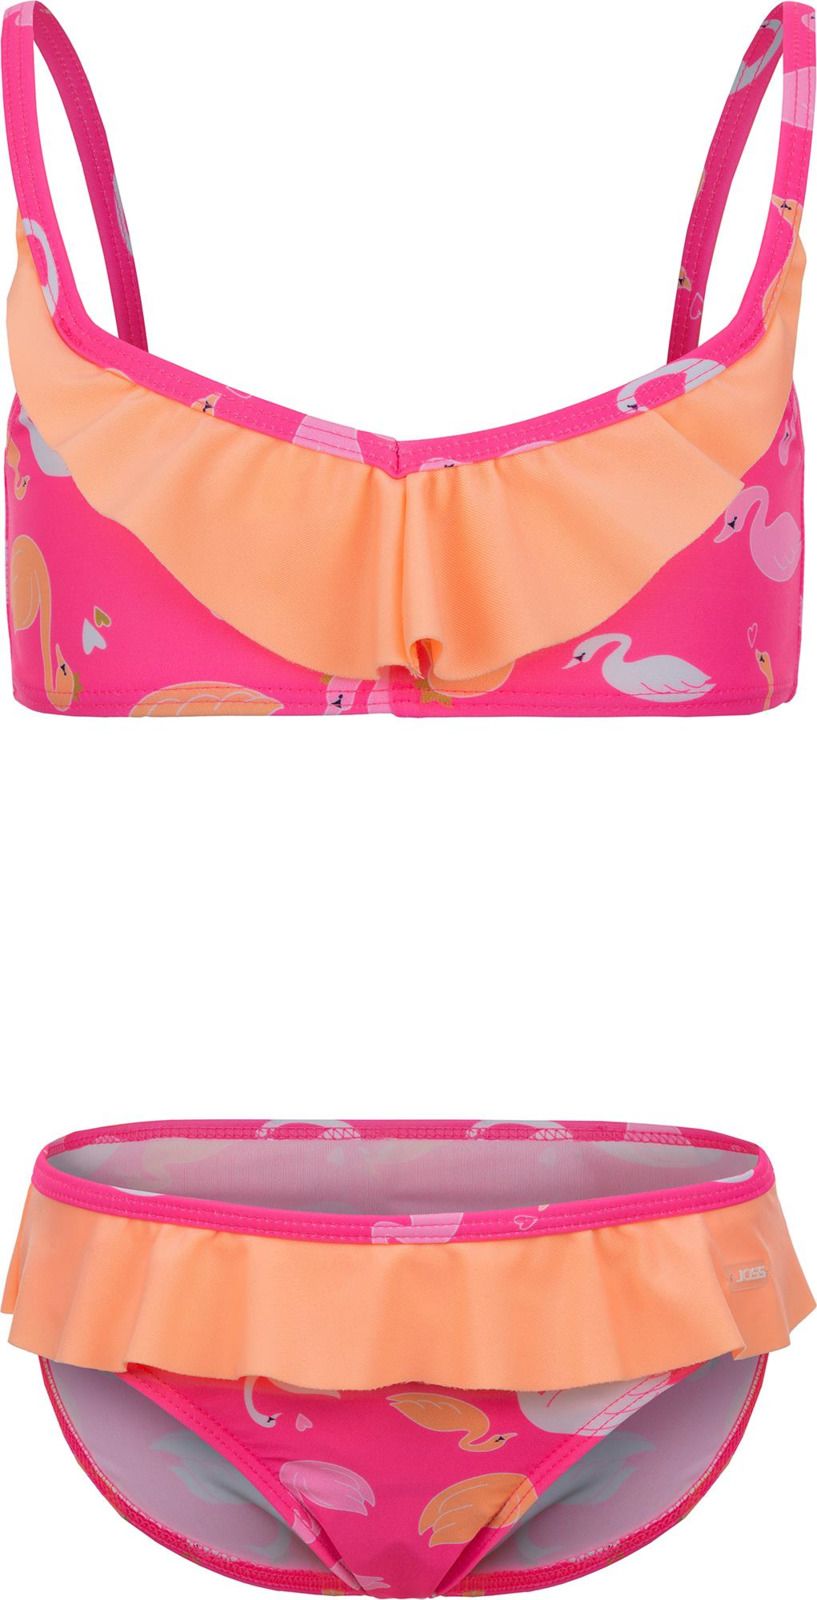     Joss Girls' Swimsuit, : -. GSB07S6-X0.  116